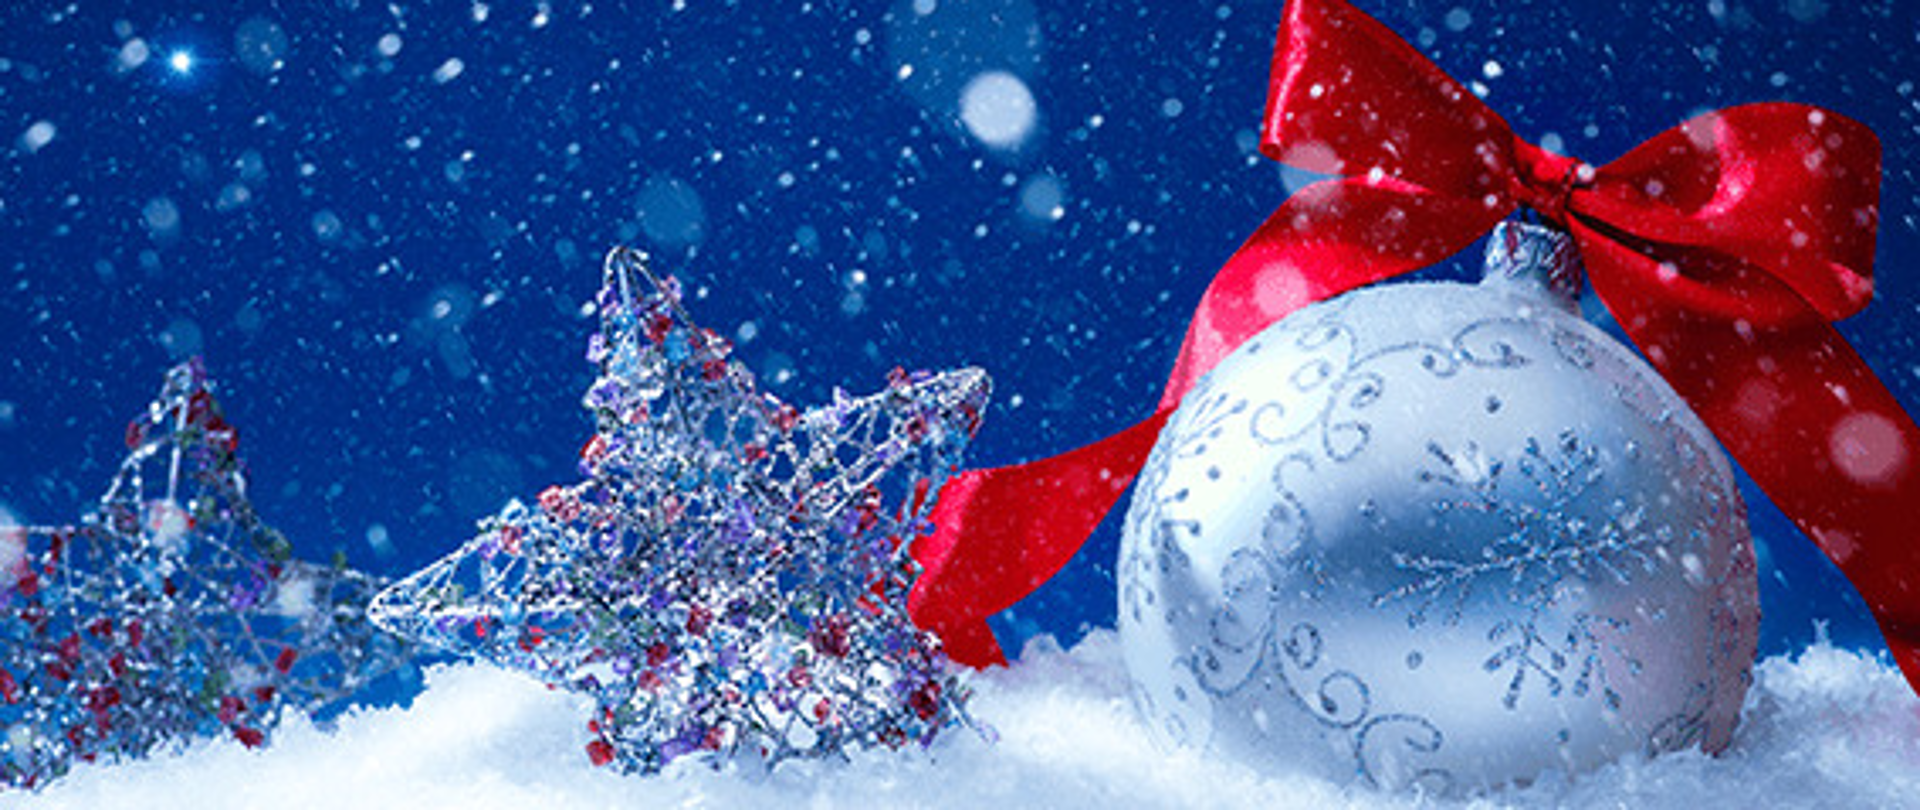 Życzenia świąteczne od dyrekcji i nauczycieli szkoły, na górze bombka i gwiazdki w śniegu, niebieskie niebo i padający śnieg